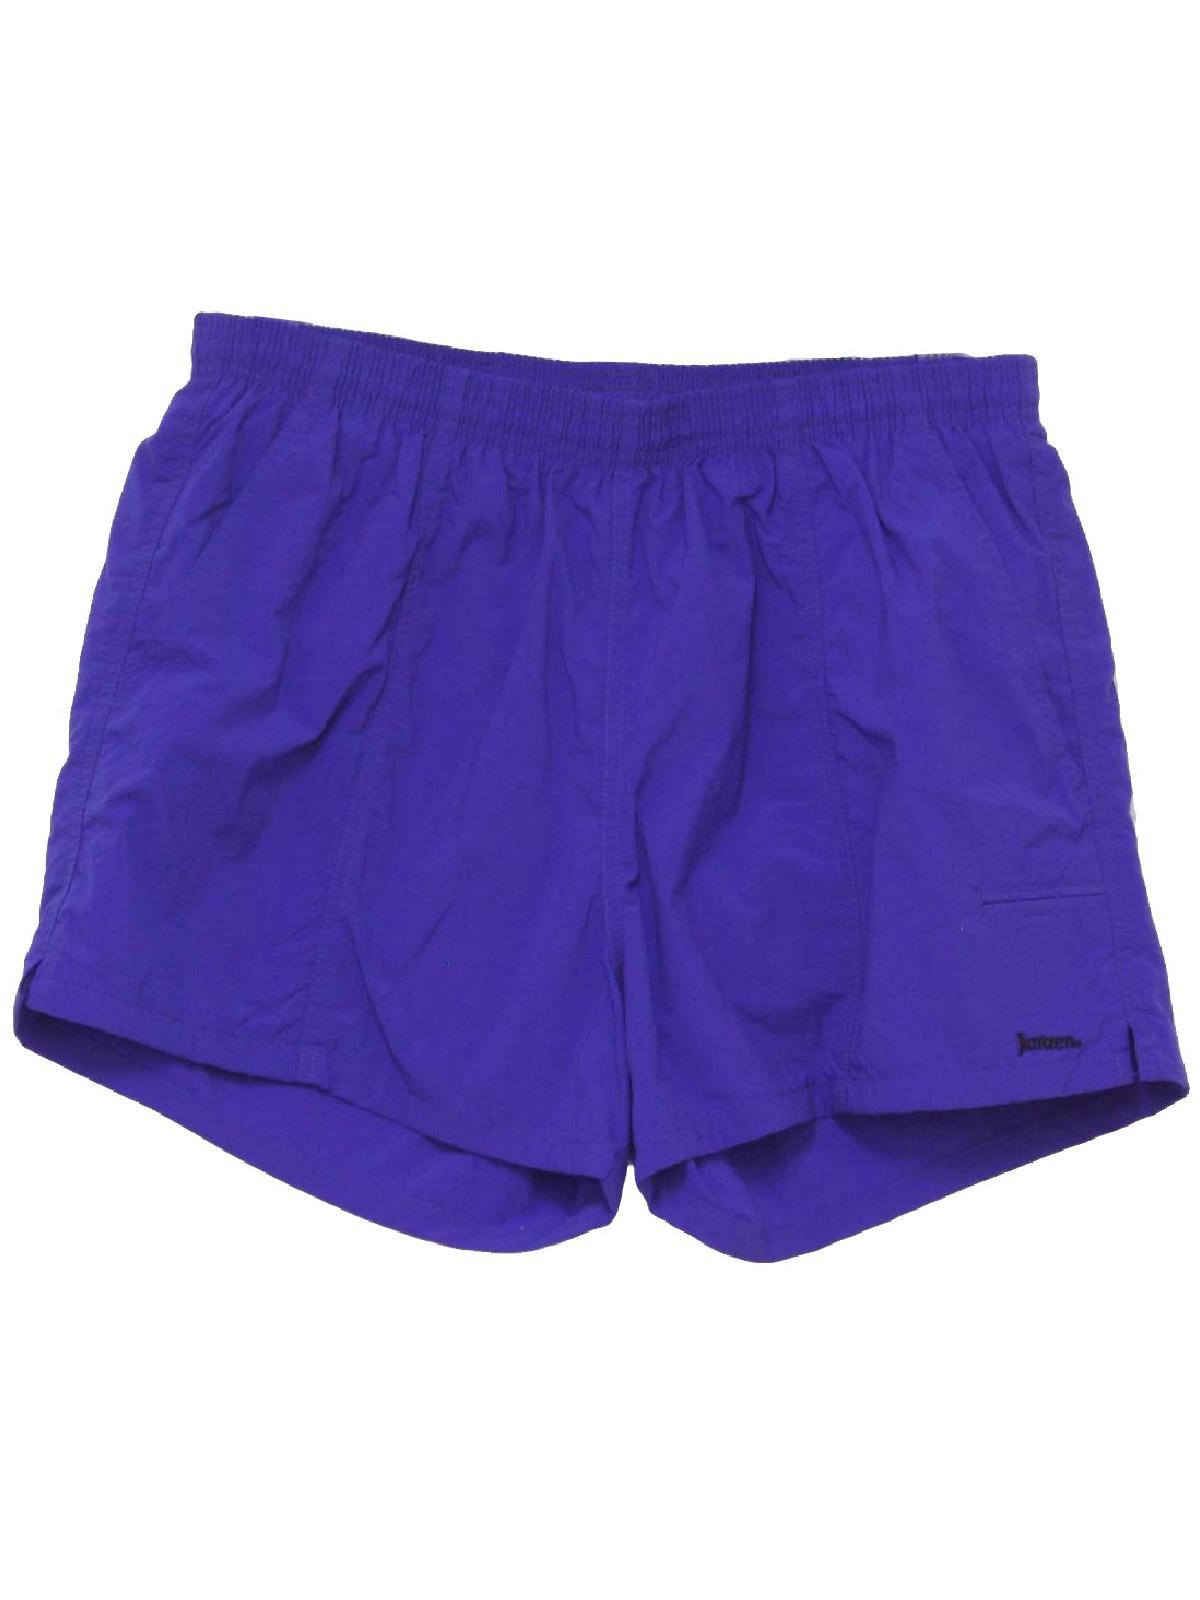 90's Jantzen Swimsuit/Swimwear: 90s -Jantzen- Mens royal purple cast ...